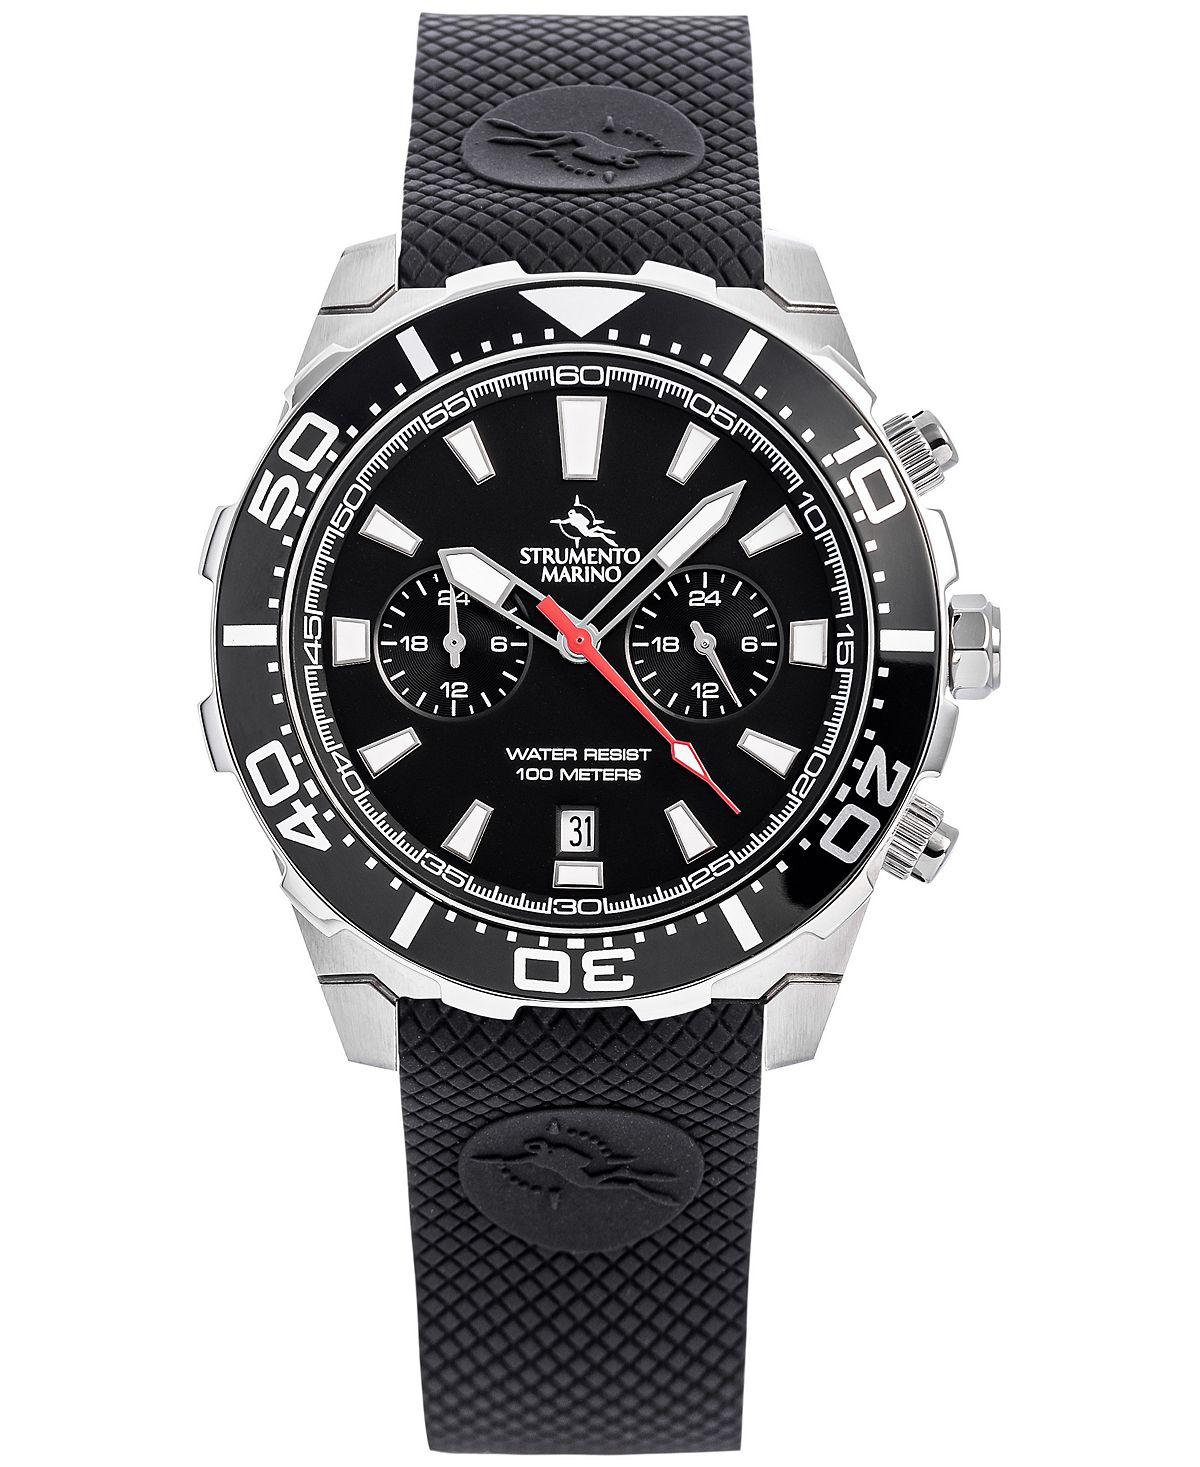 Мужские часы Skipper с двумя часовыми поясами, черный силиконовый ремешок, 44 мм Strumento Marino 16 дюймовая пицца с кожурой ooni цвет stainless steel black